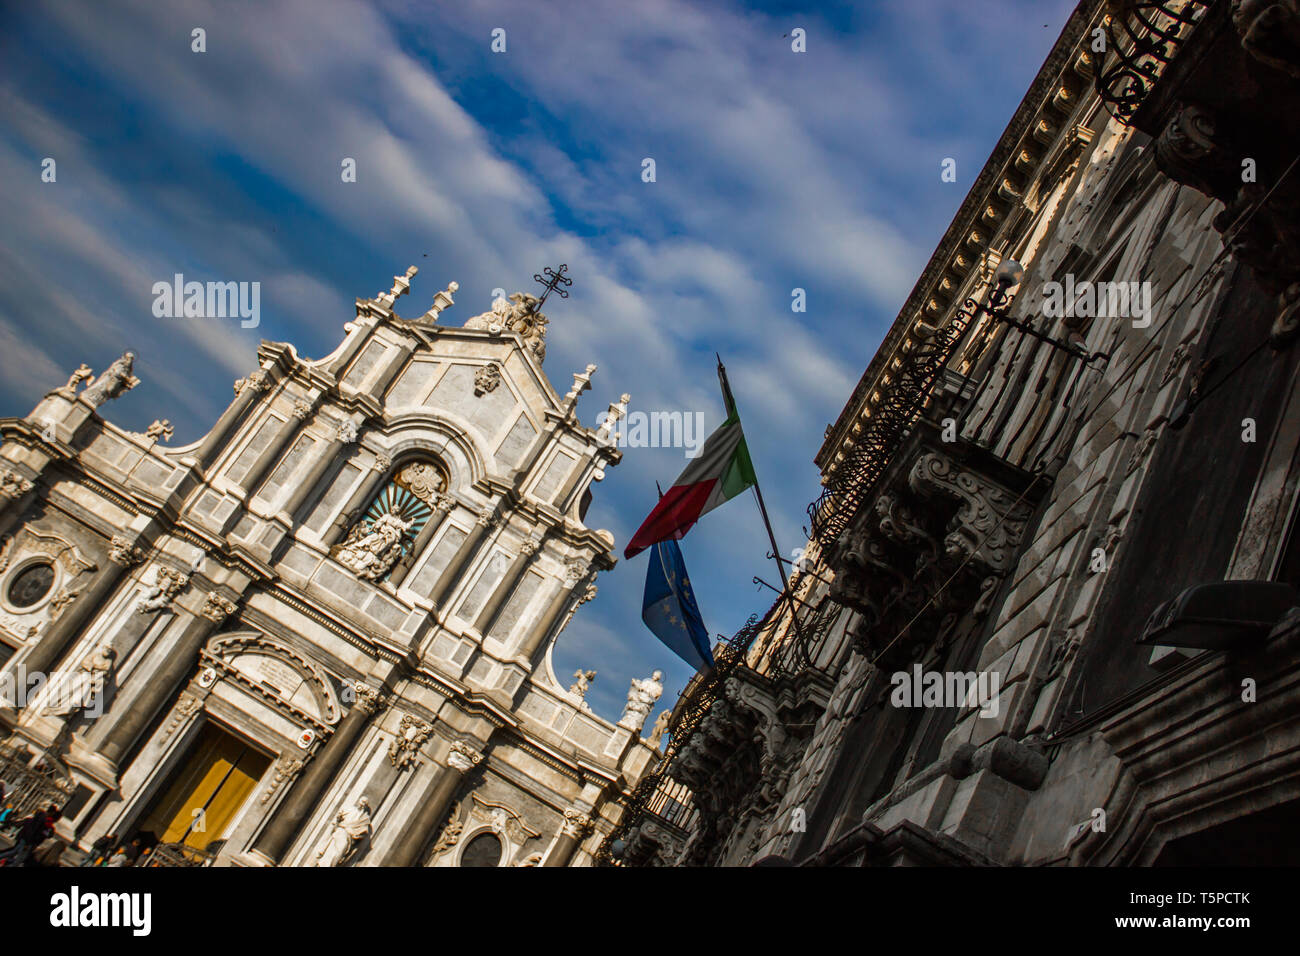 Die Kathedrale von Catania Frontansicht mit barocken Architektur Gebäude, style Cut Shot Stockfoto